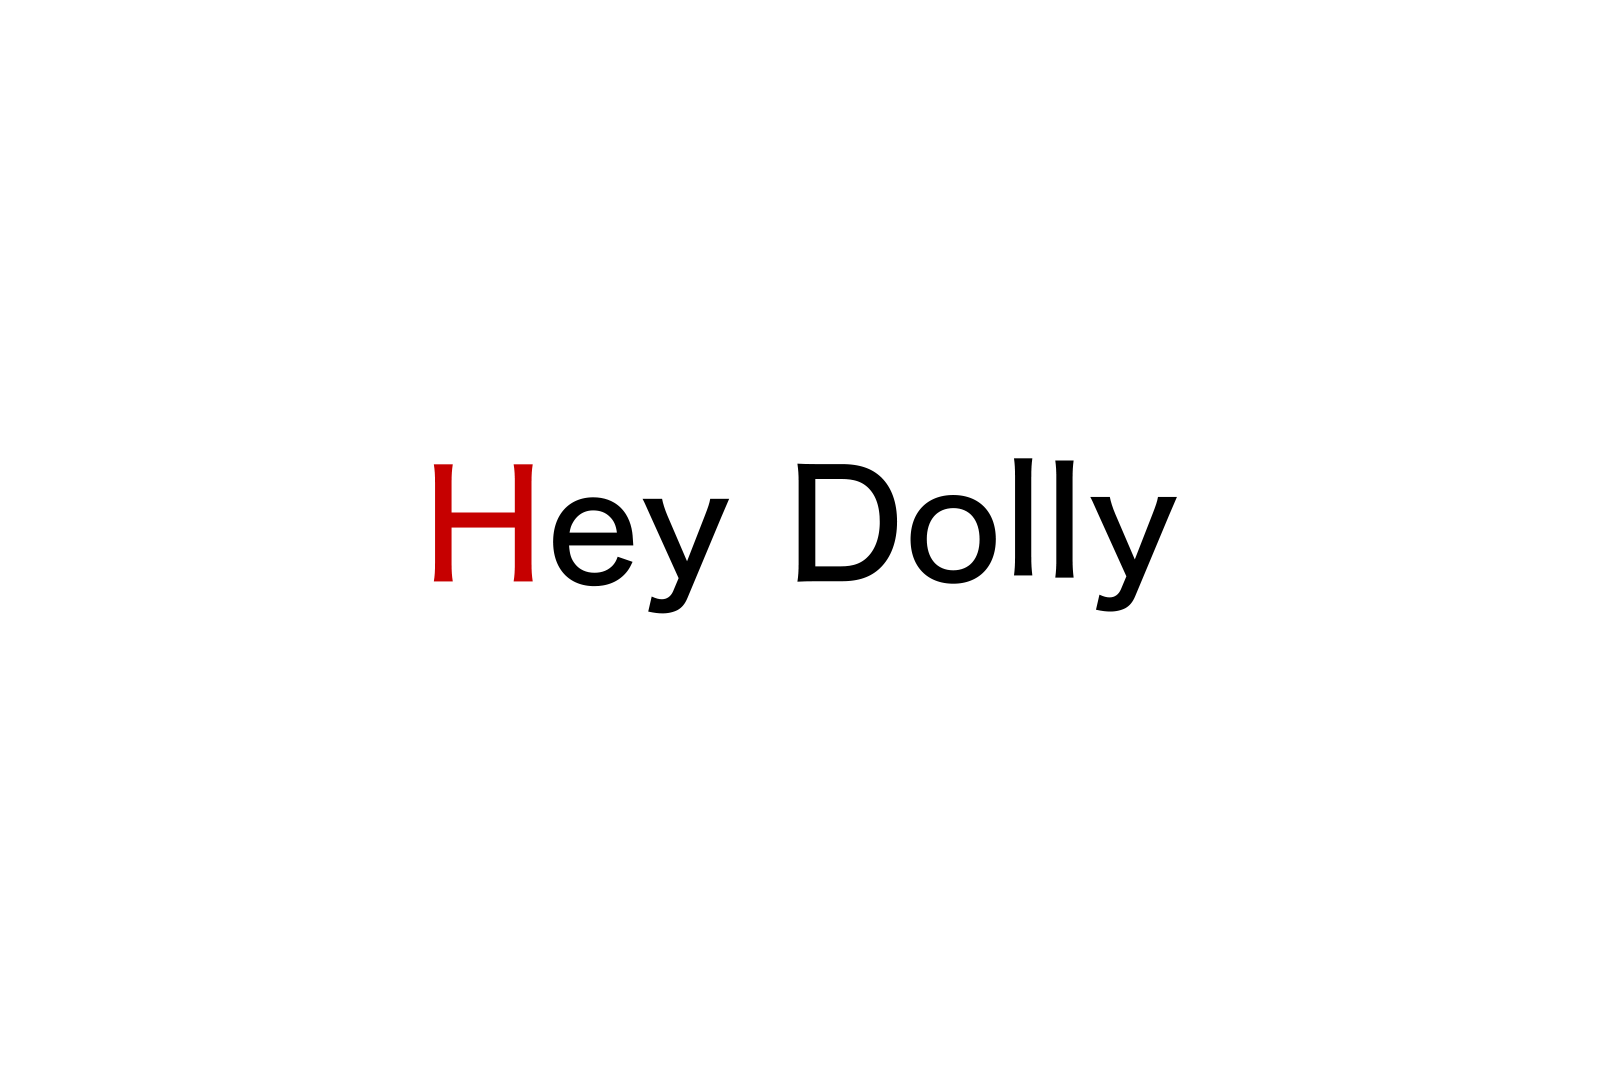 HEY DOLLY